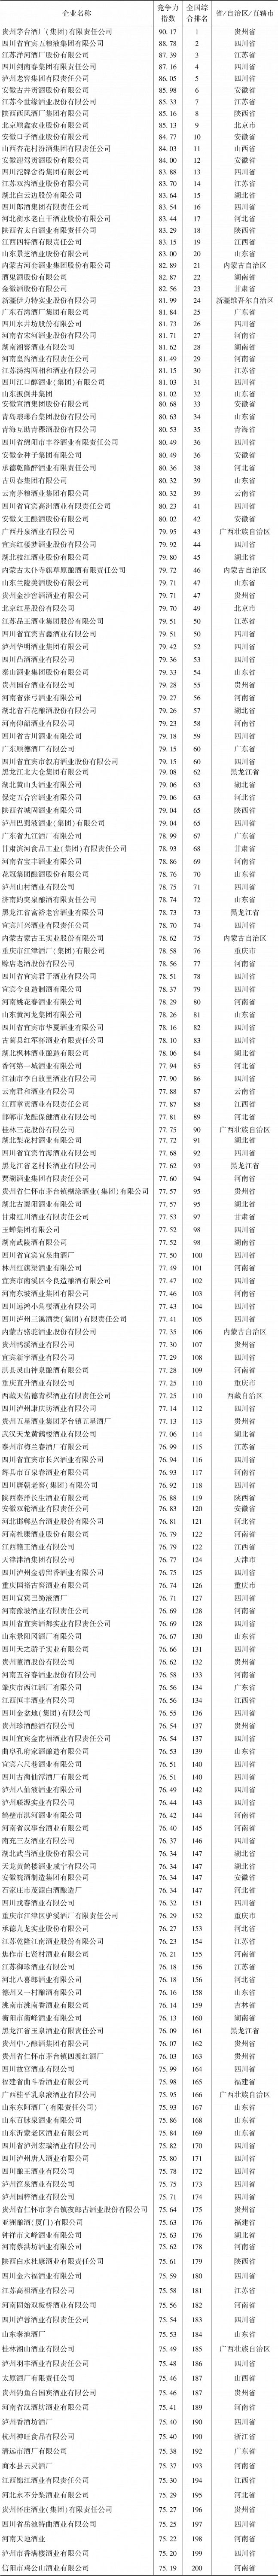 表1-4 中国白酒企业竞争力指数排名200强情况